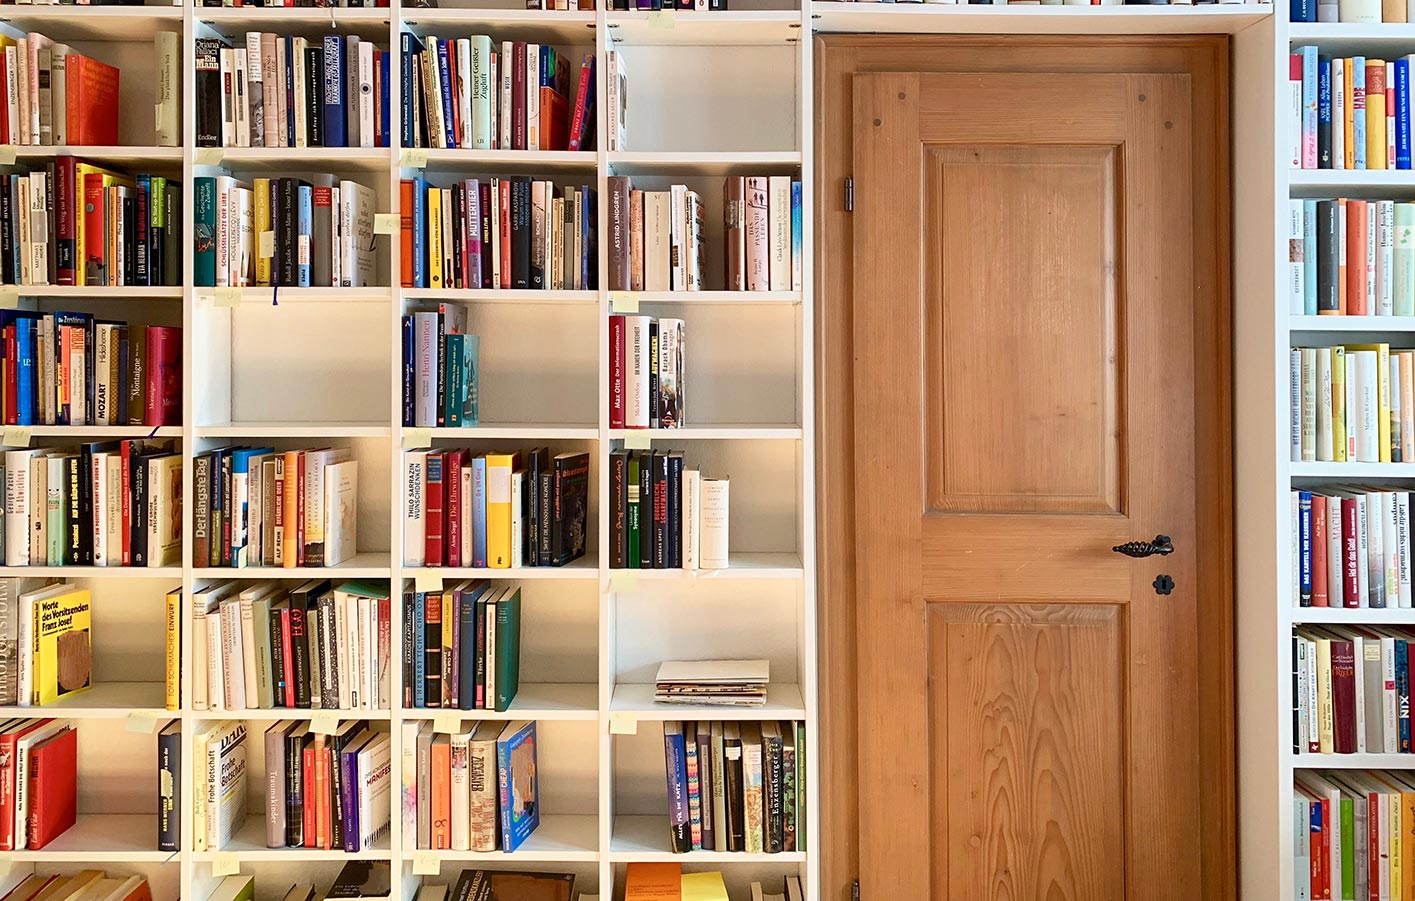 Holz Tür umrahmt von Bücherregalen